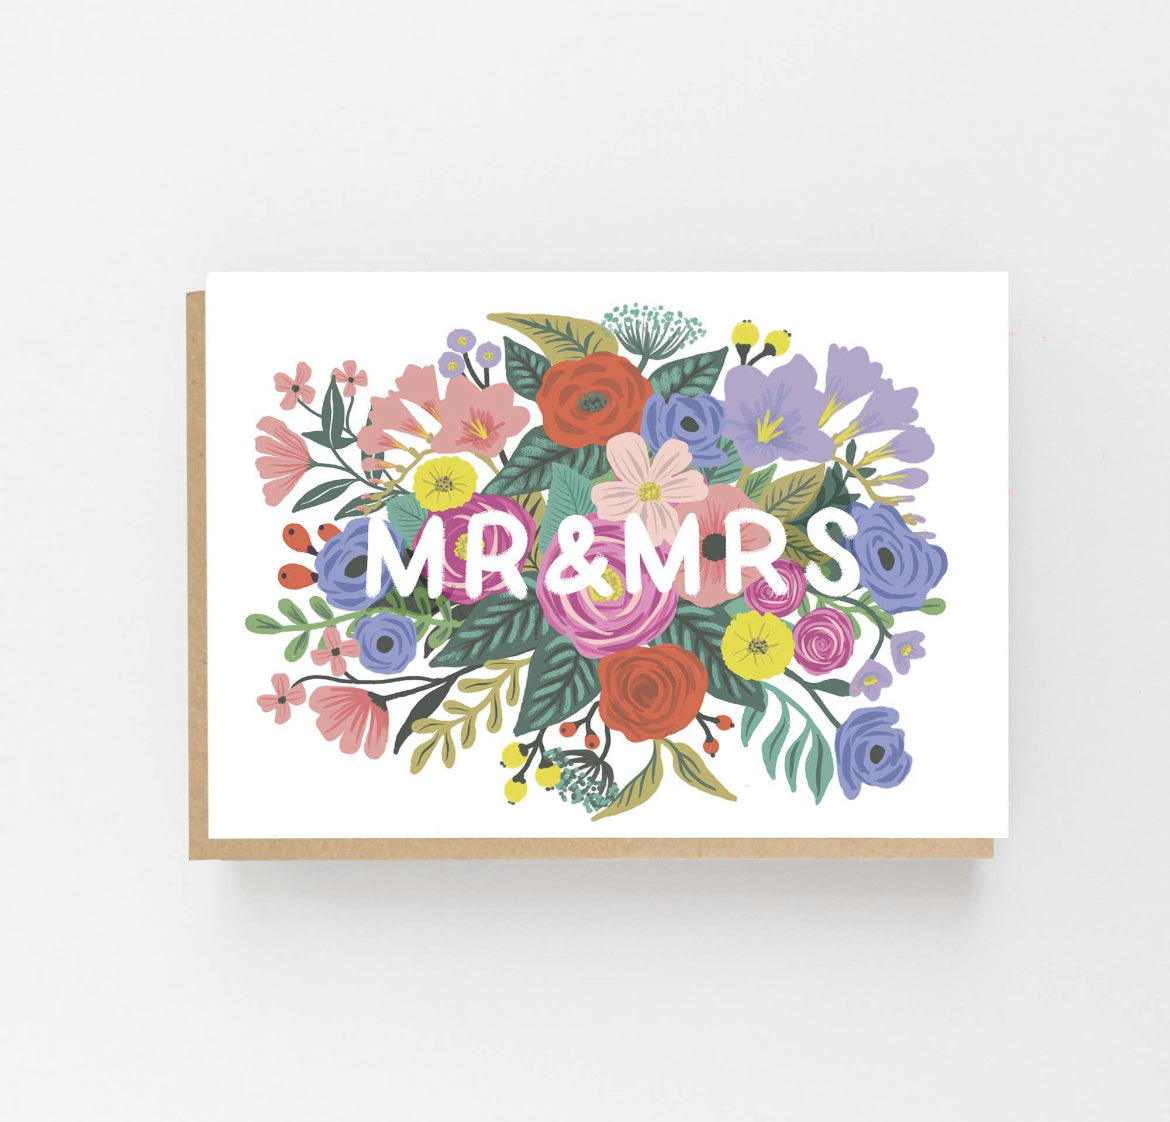 Mr & Mrs Wedding Card